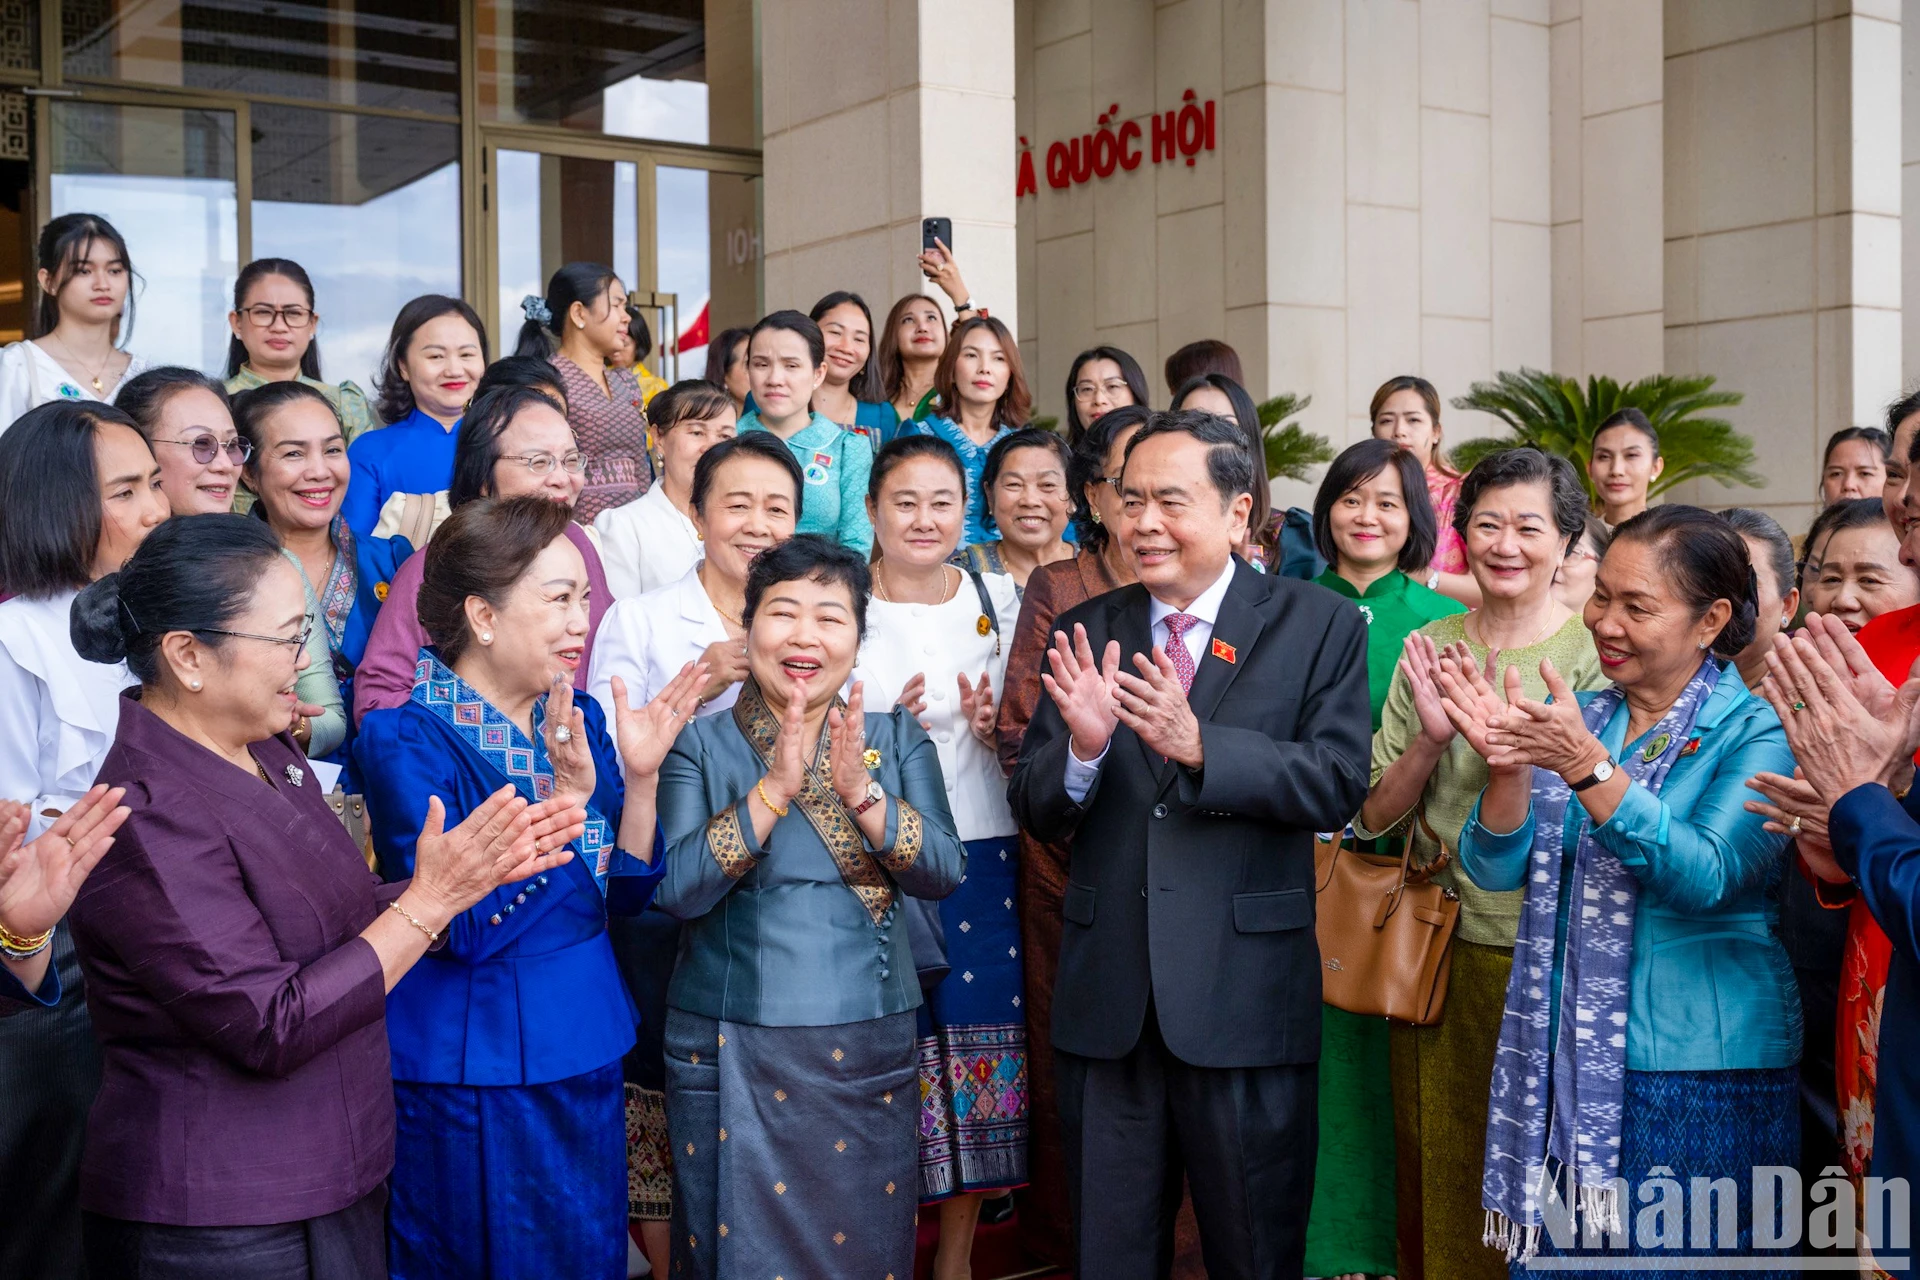 越南国会主席陈青敏与代表们合影。